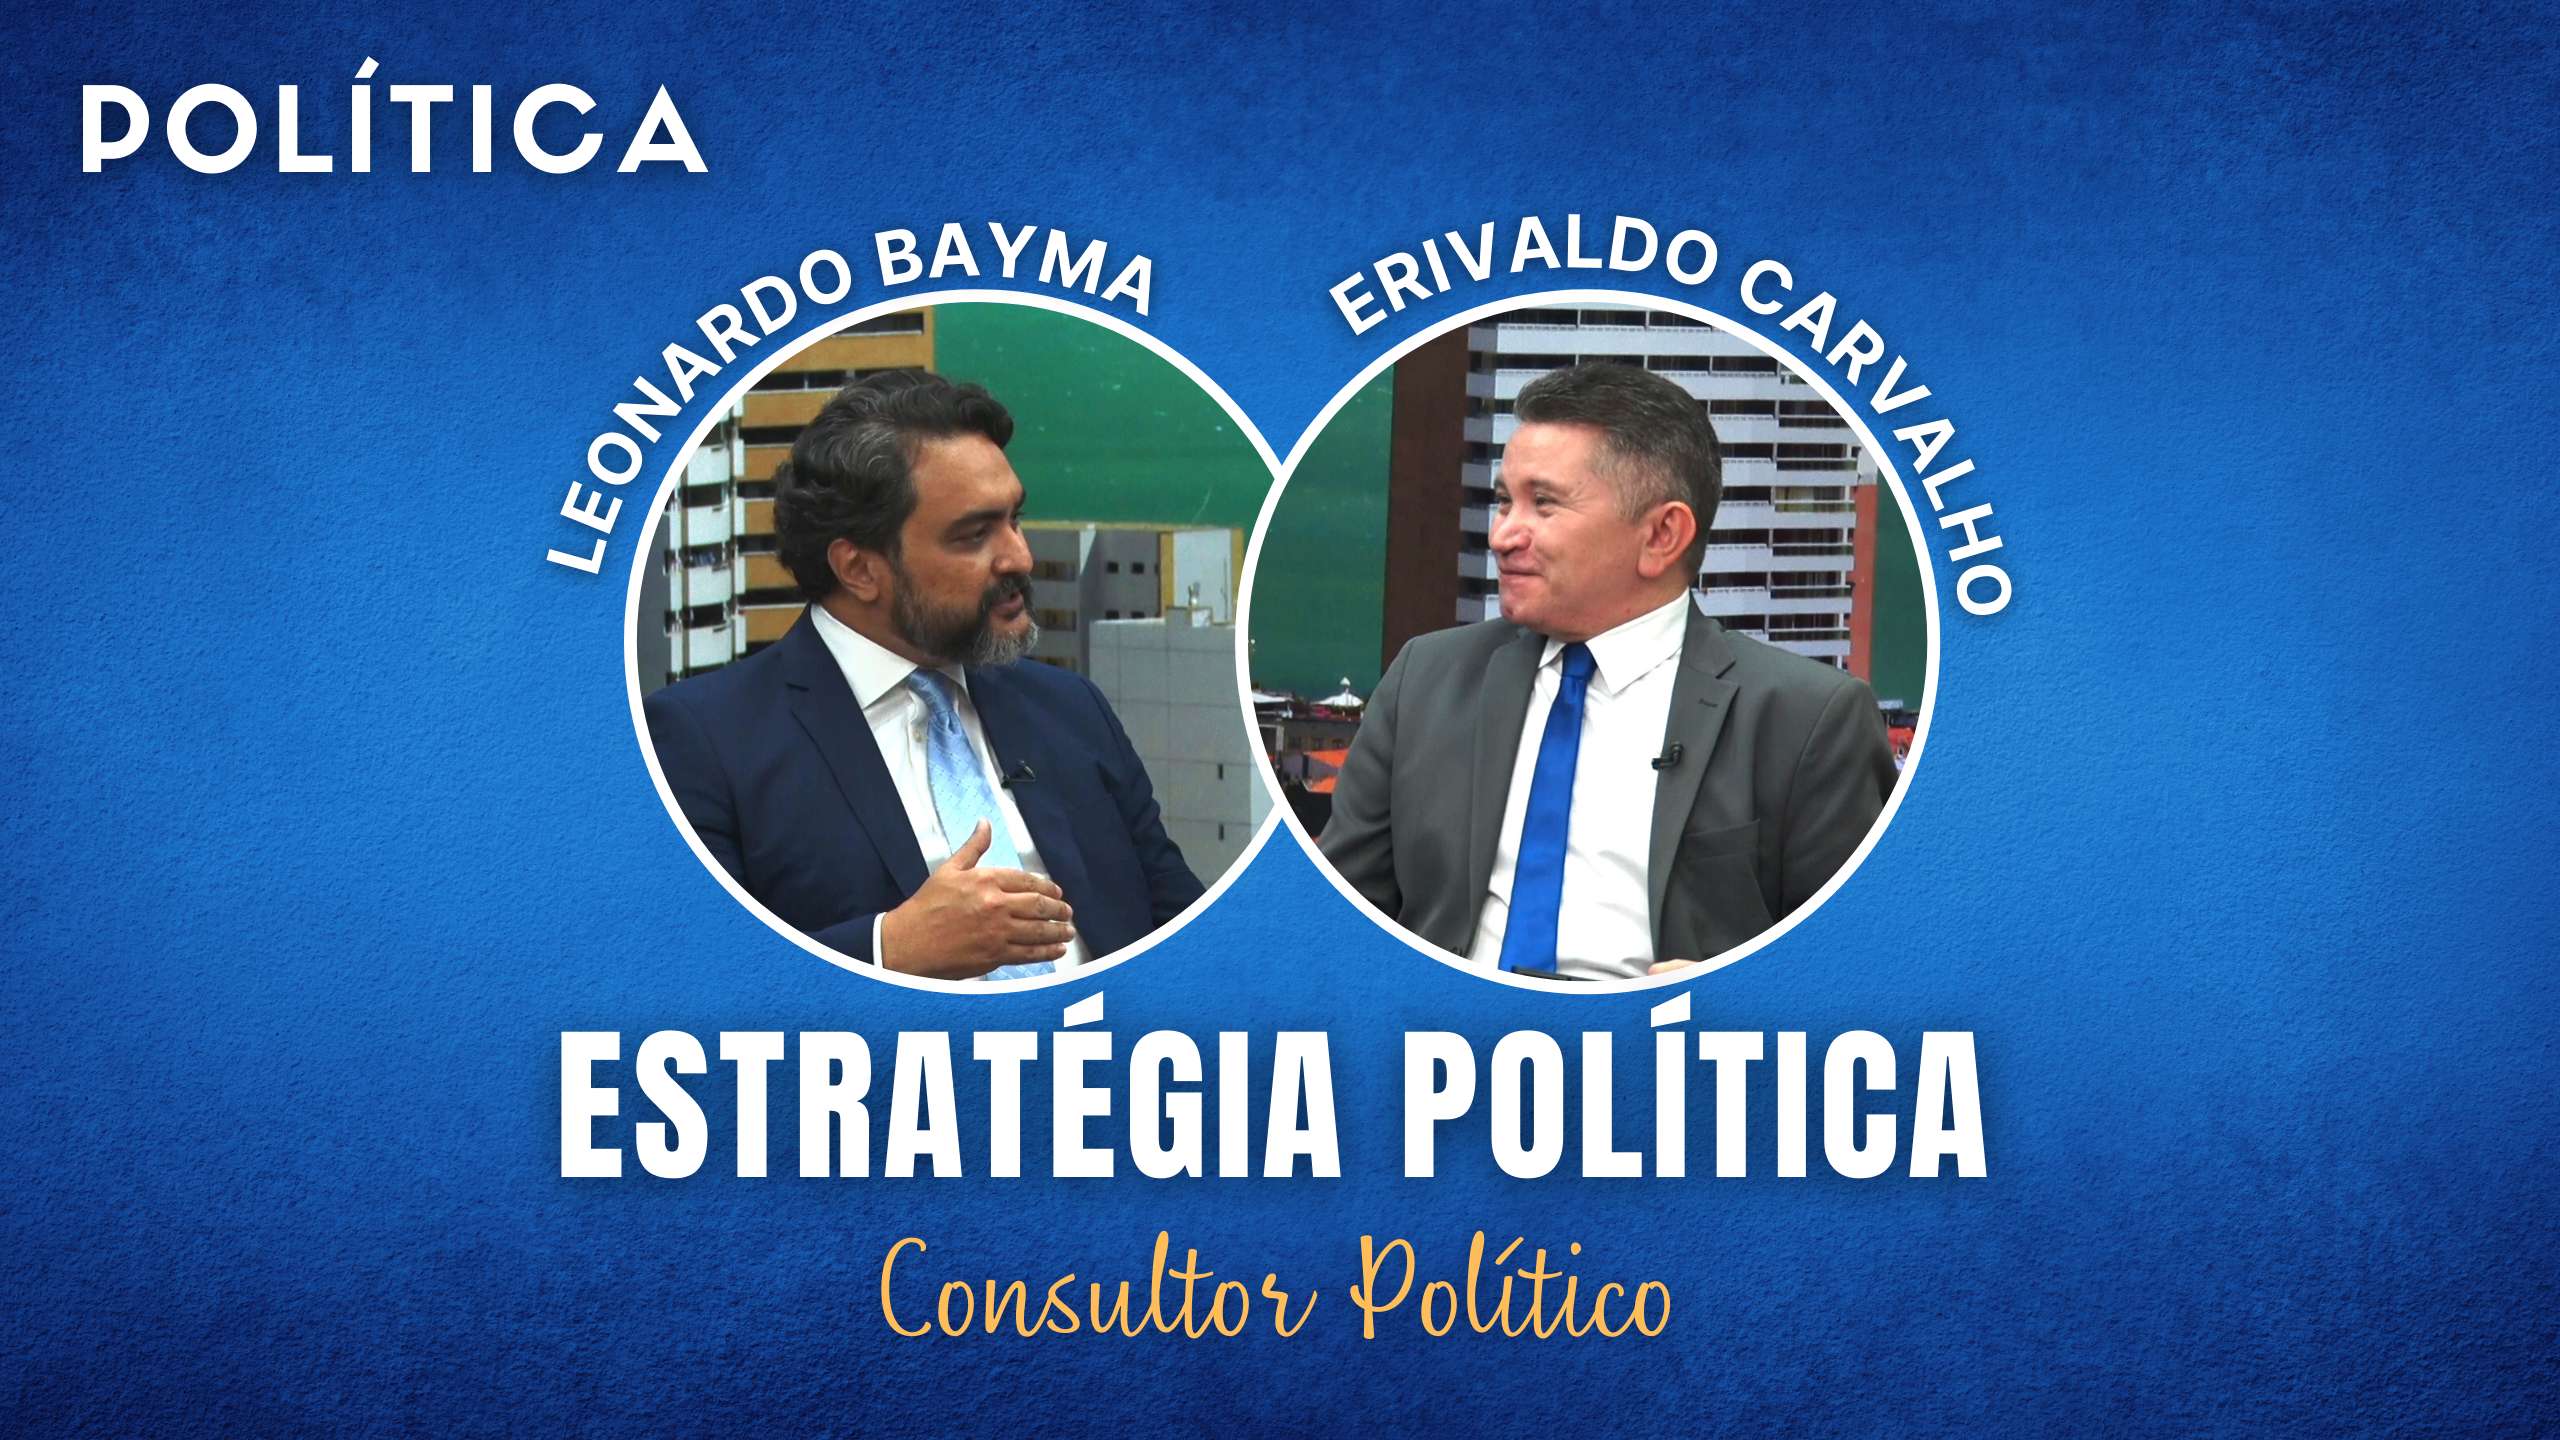 Erivaldo carvalho conversa com o Consultor Político Leonardo Bayma